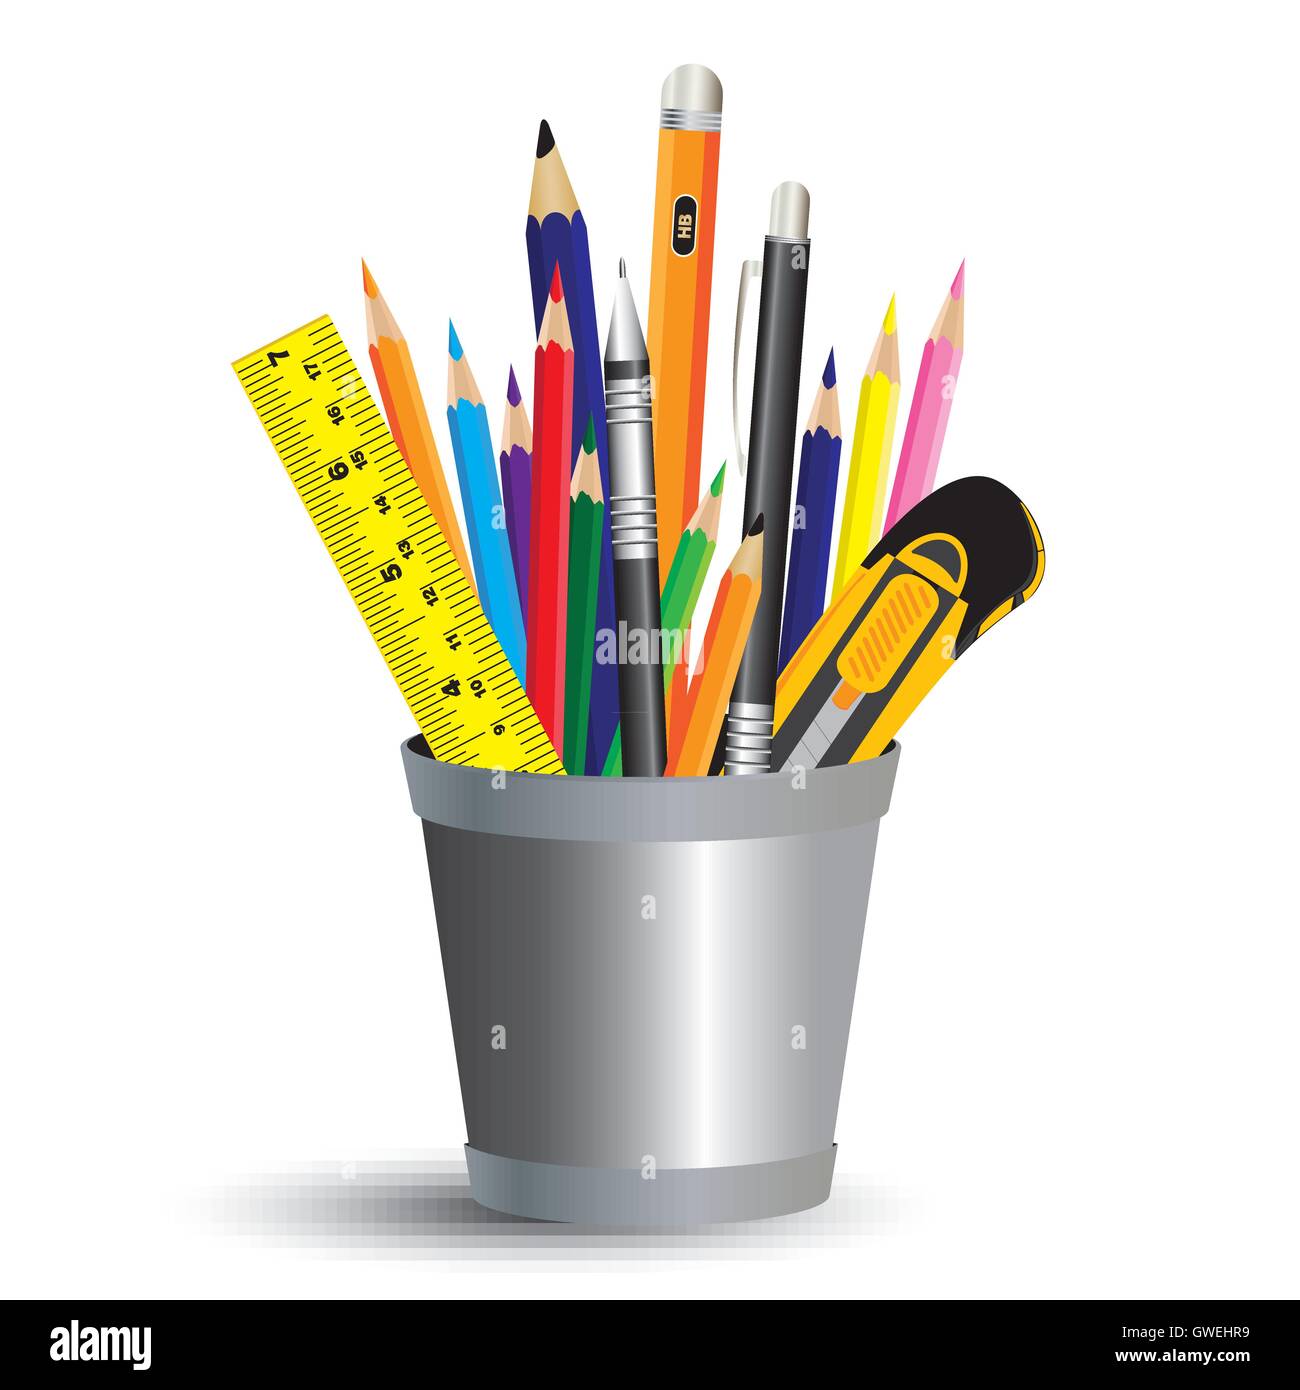 Emoji Icons Stationery Set Pen Pencil Ruler Sharpener & Eraser School Gift 